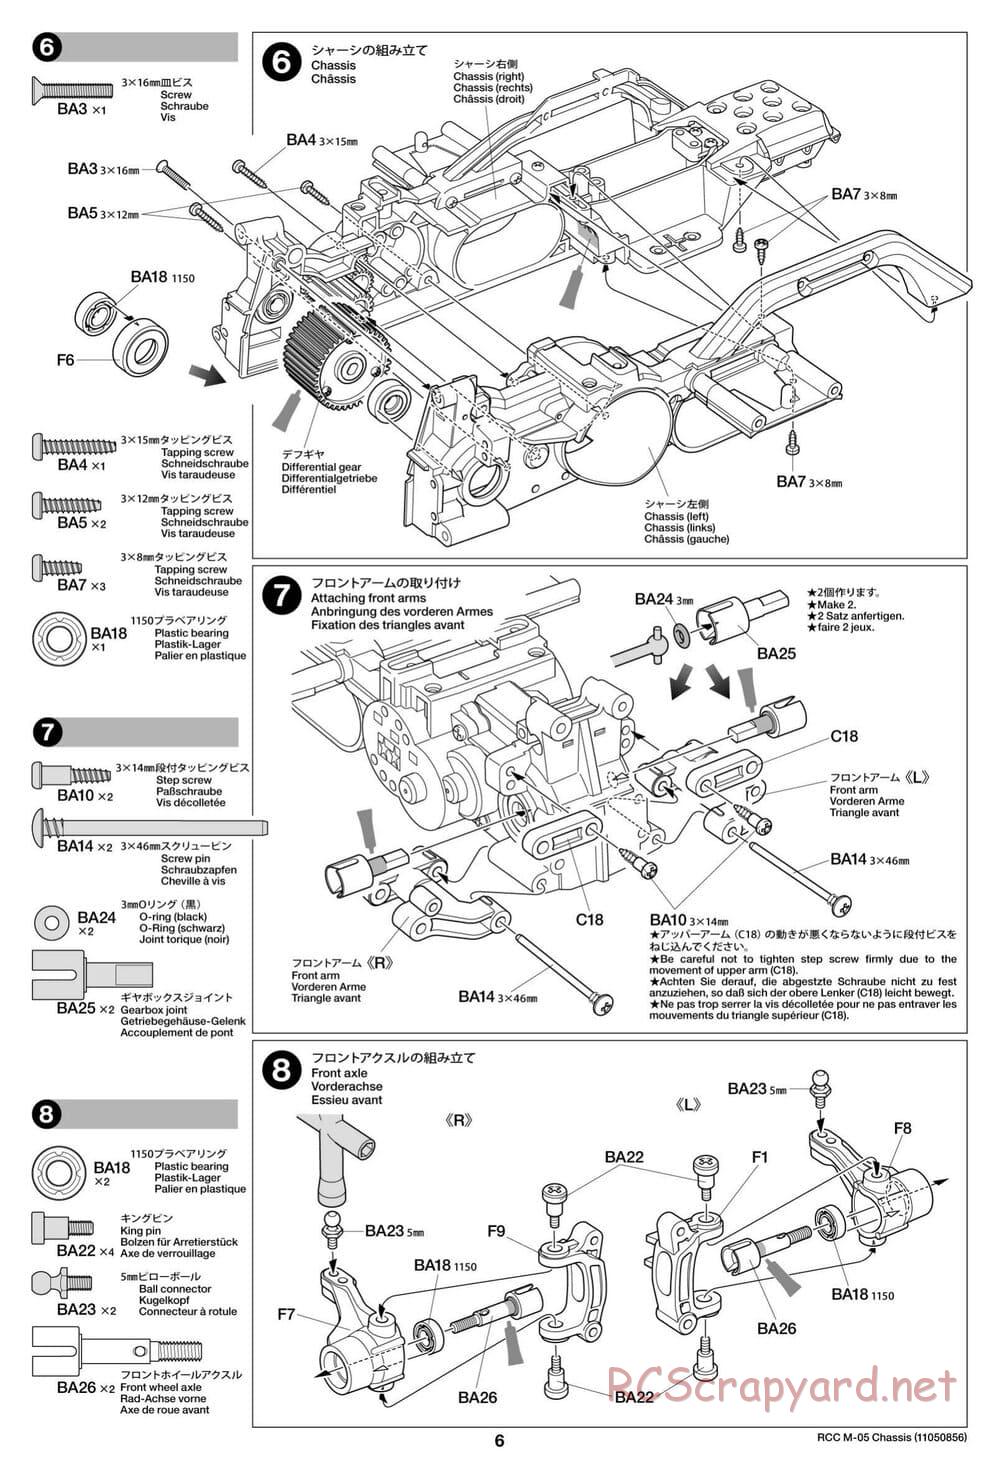 Tamiya - M-05 Chassis - Manual - Page 6